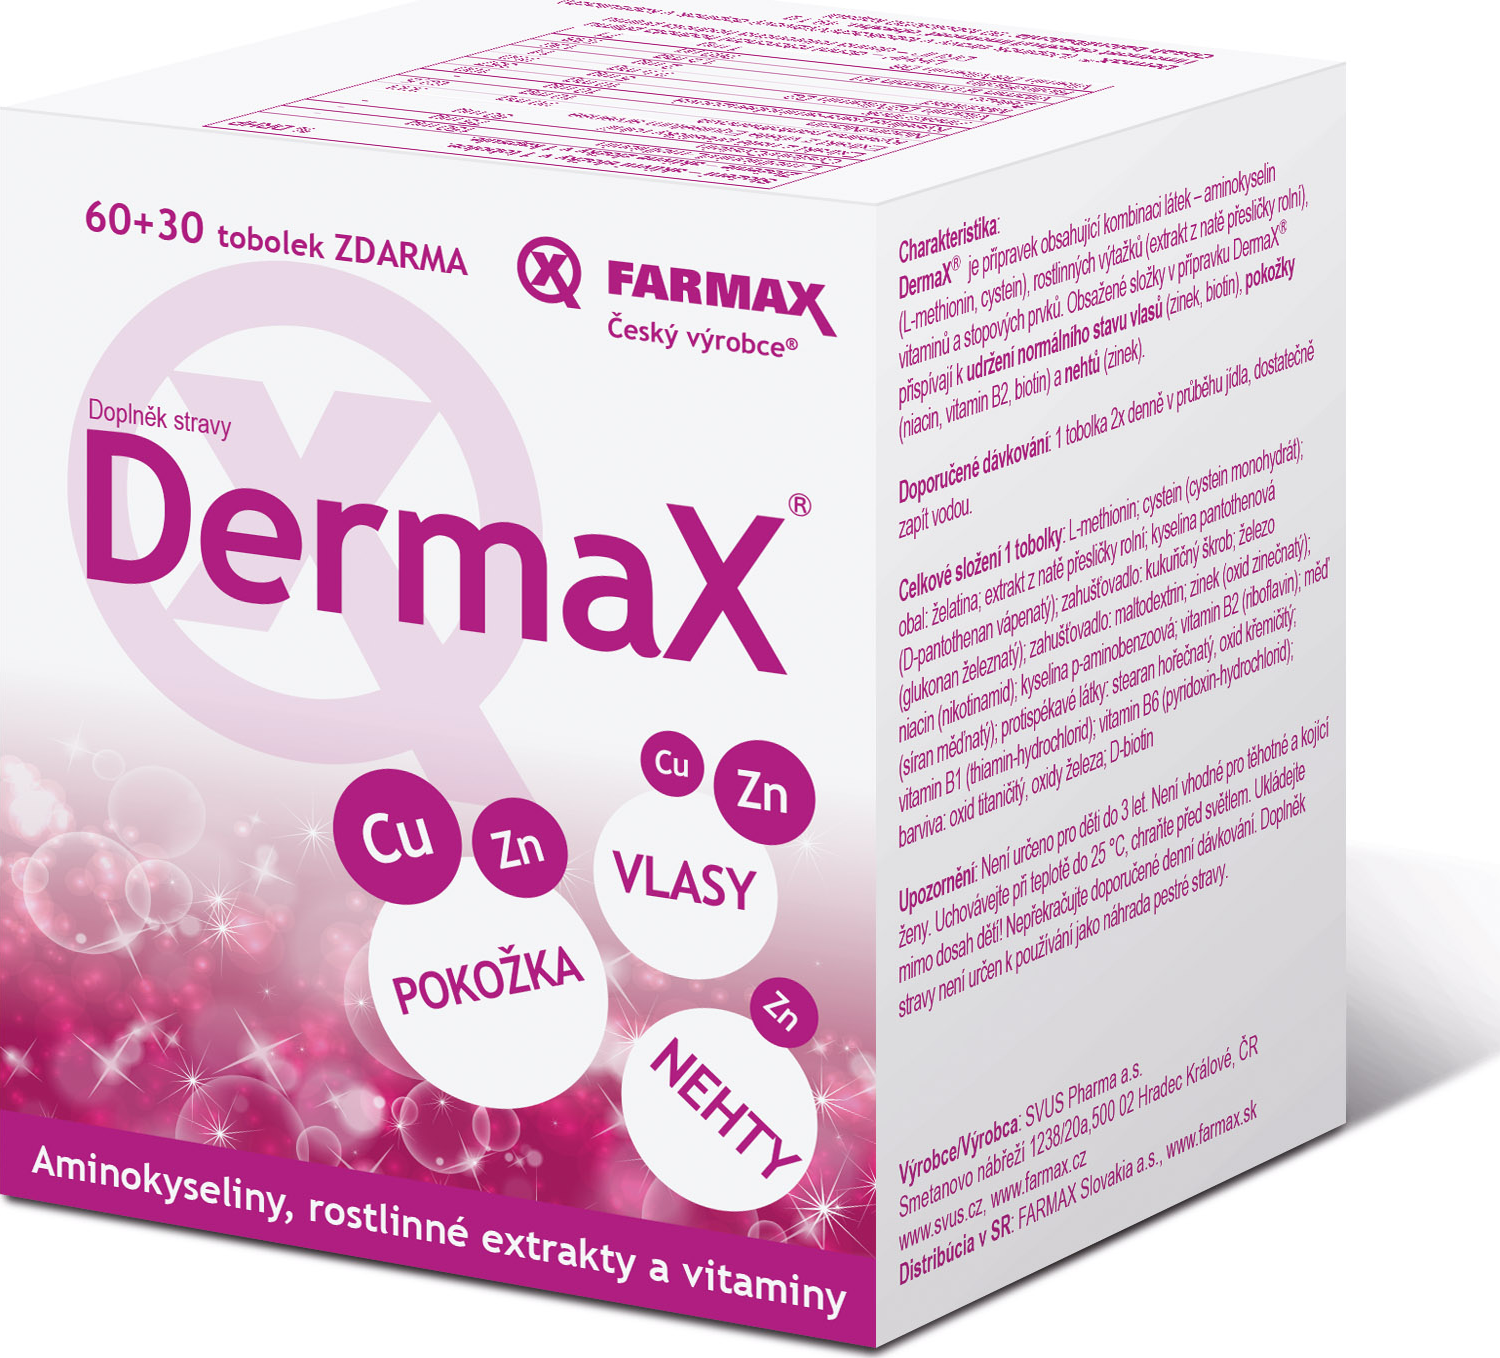 Farmax Dermax 90 Tob Od 198 Kc Zbozi Cz